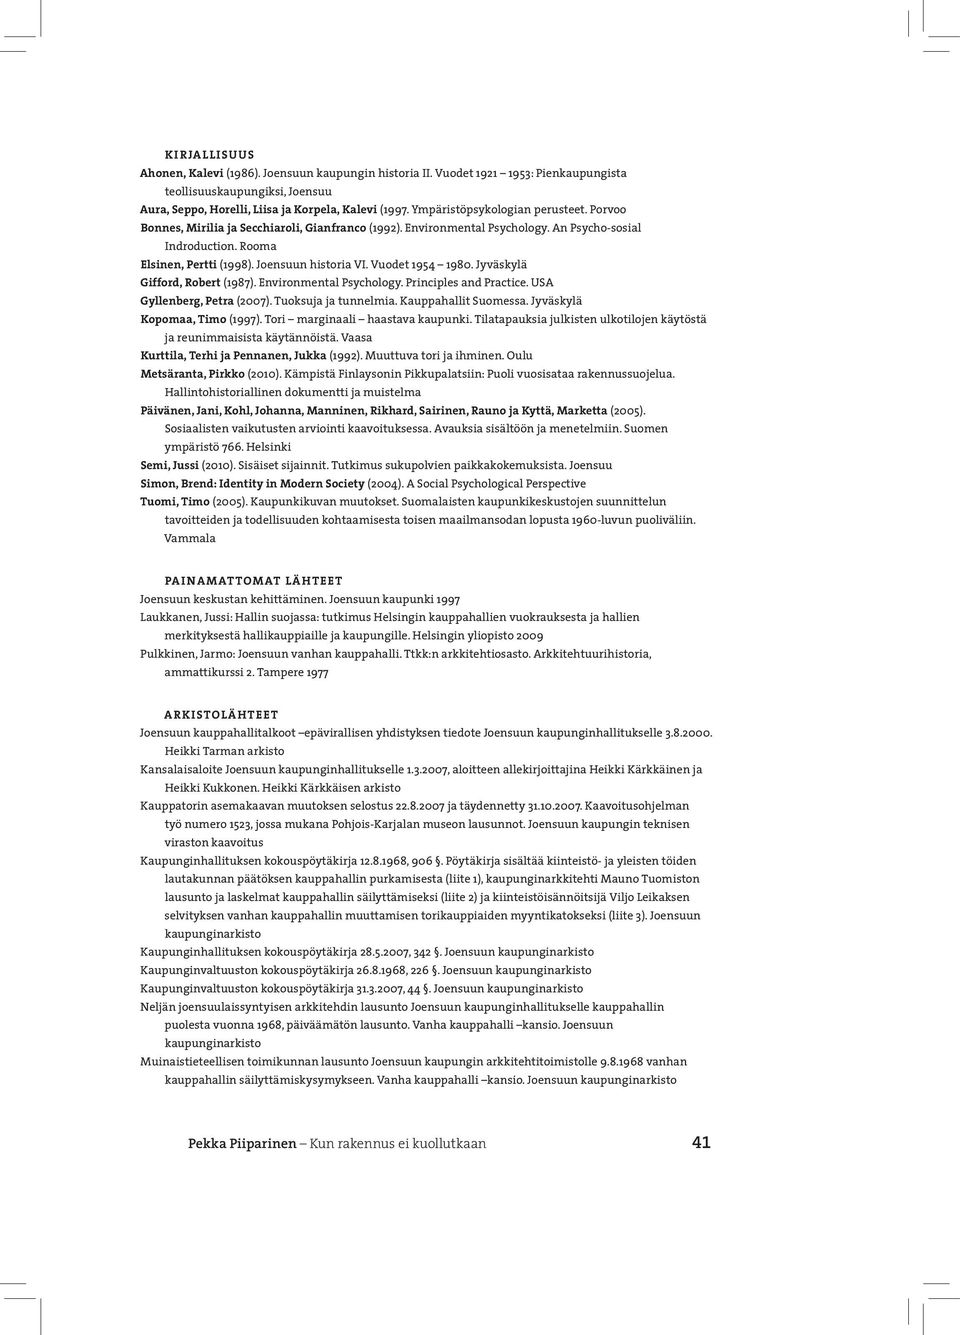 Vuodet 1954 1980. Jyväskylä Gifford, Robert (1987). Environmental Psychology. Principles and Practice. USA Gyllenberg, Petra (2007). Tuoksuja ja tunnelmia. Kauppahallit Suomessa.